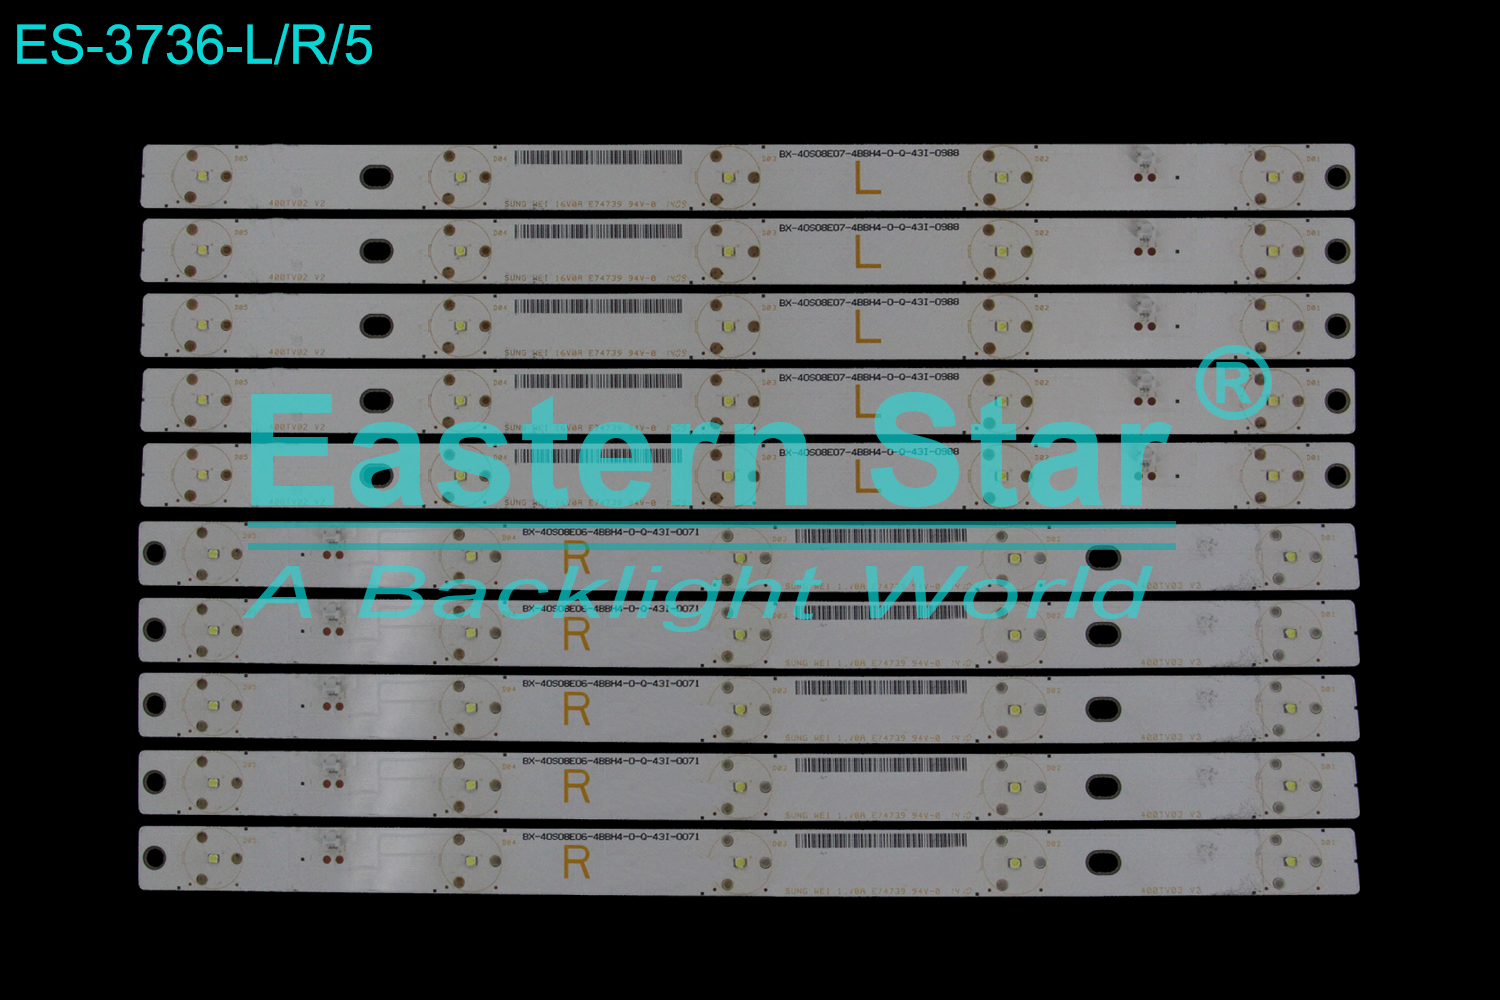 ES-3736 LED TV Backlight use for 40" Panasonic TX-40AX630B L: 400TV02 V2 BX-40S08E07-4BBH4-0-Q-43I-0988 E74739 R: 400TV03 V2 BX-40S08E06-4BBH4-0-Q-43I-0071 E74739 LED STRIP(10)